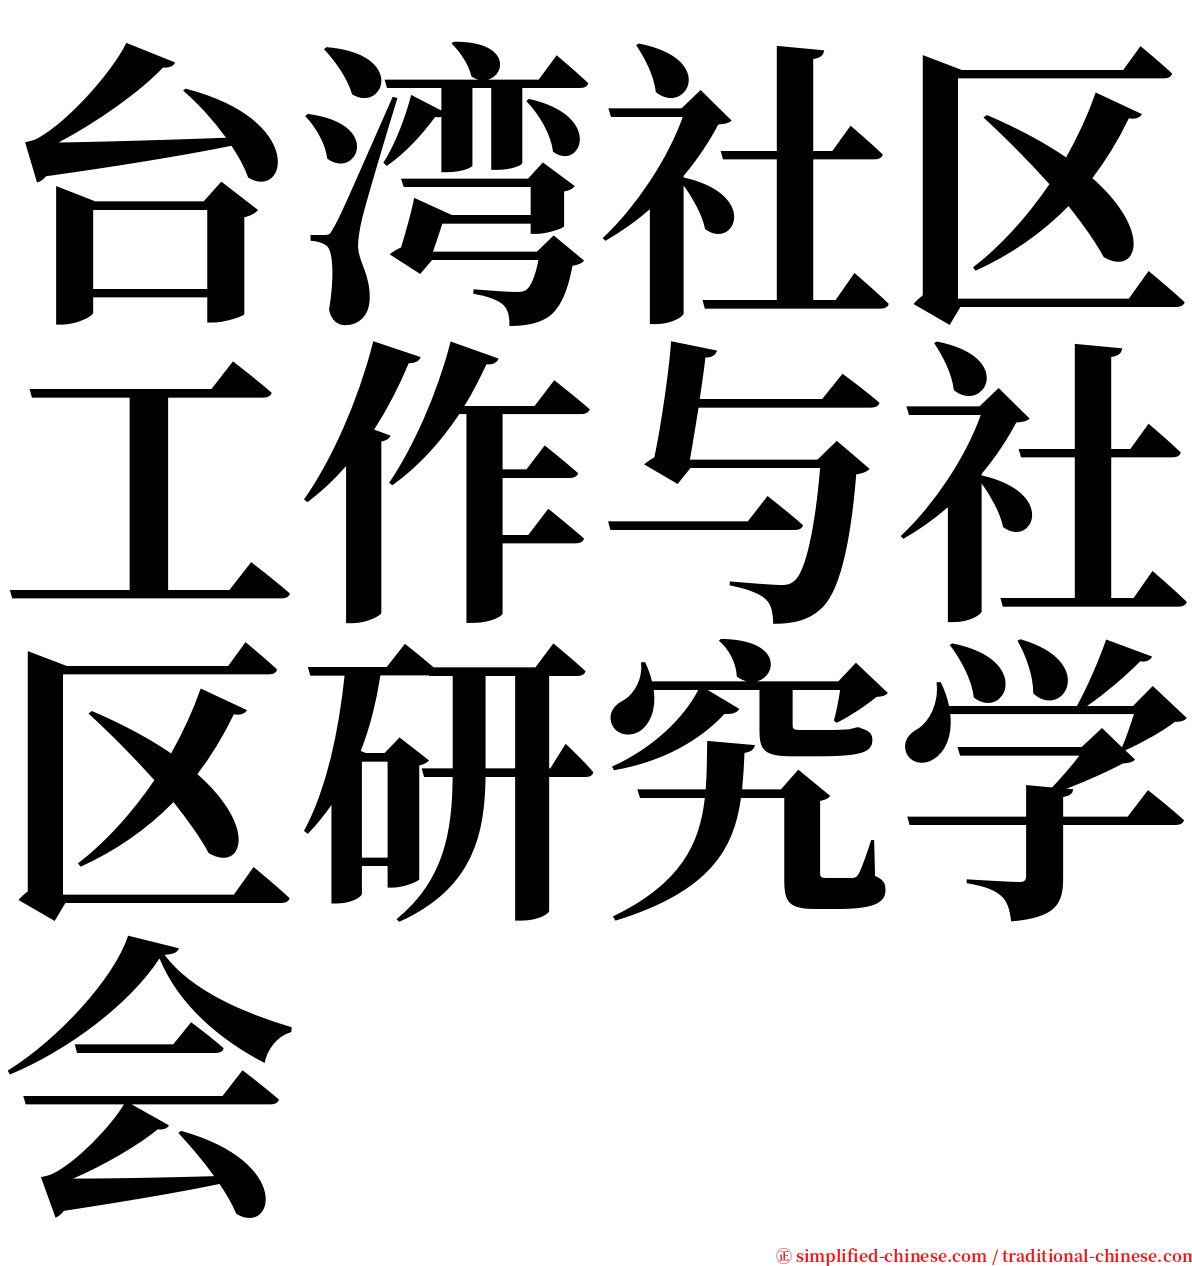 台湾社区工作与社区研究学会 serif font